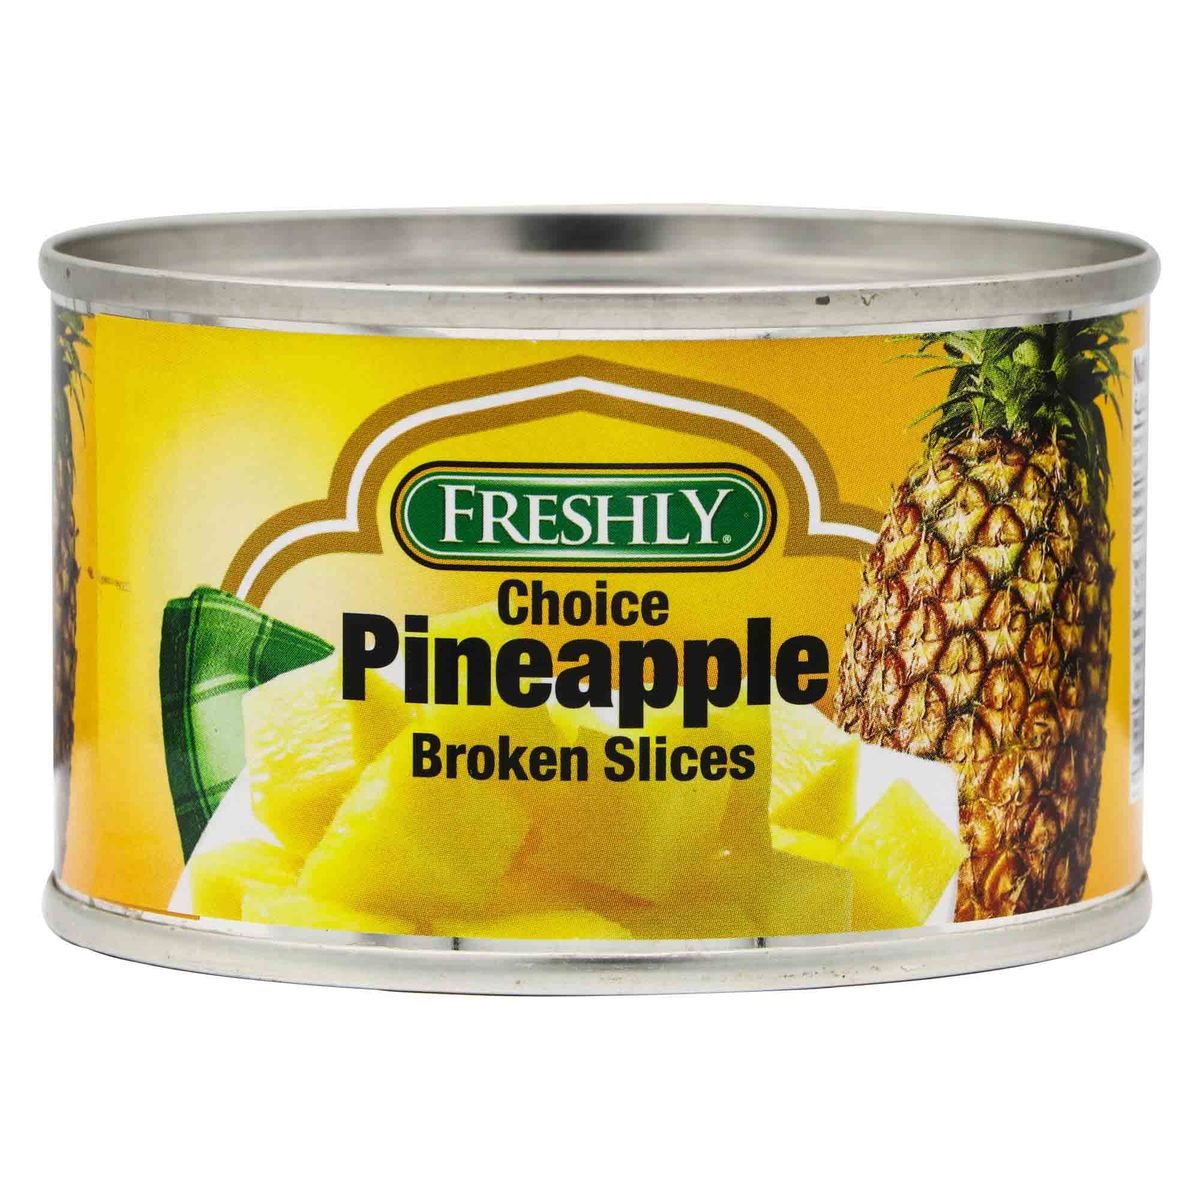 Freshly Choice Pineapple Broken Slices 227g